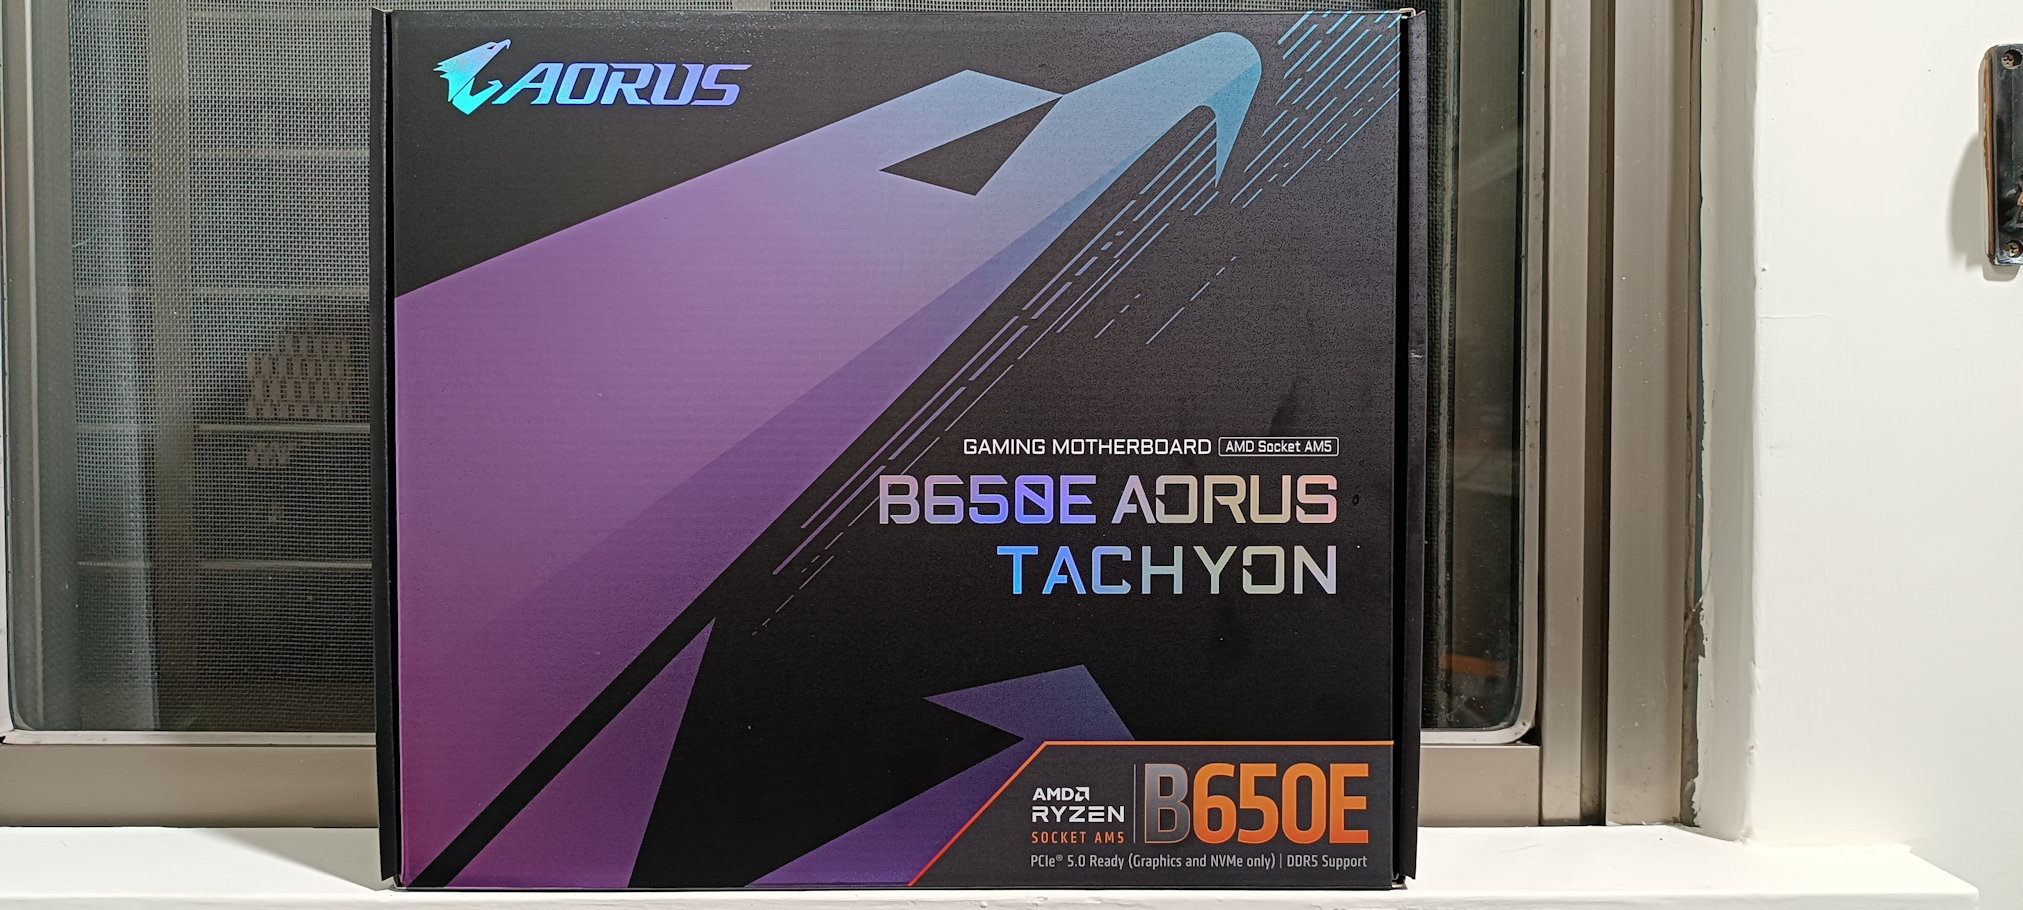 AORUS-B650E-Tachyon-3.jpg